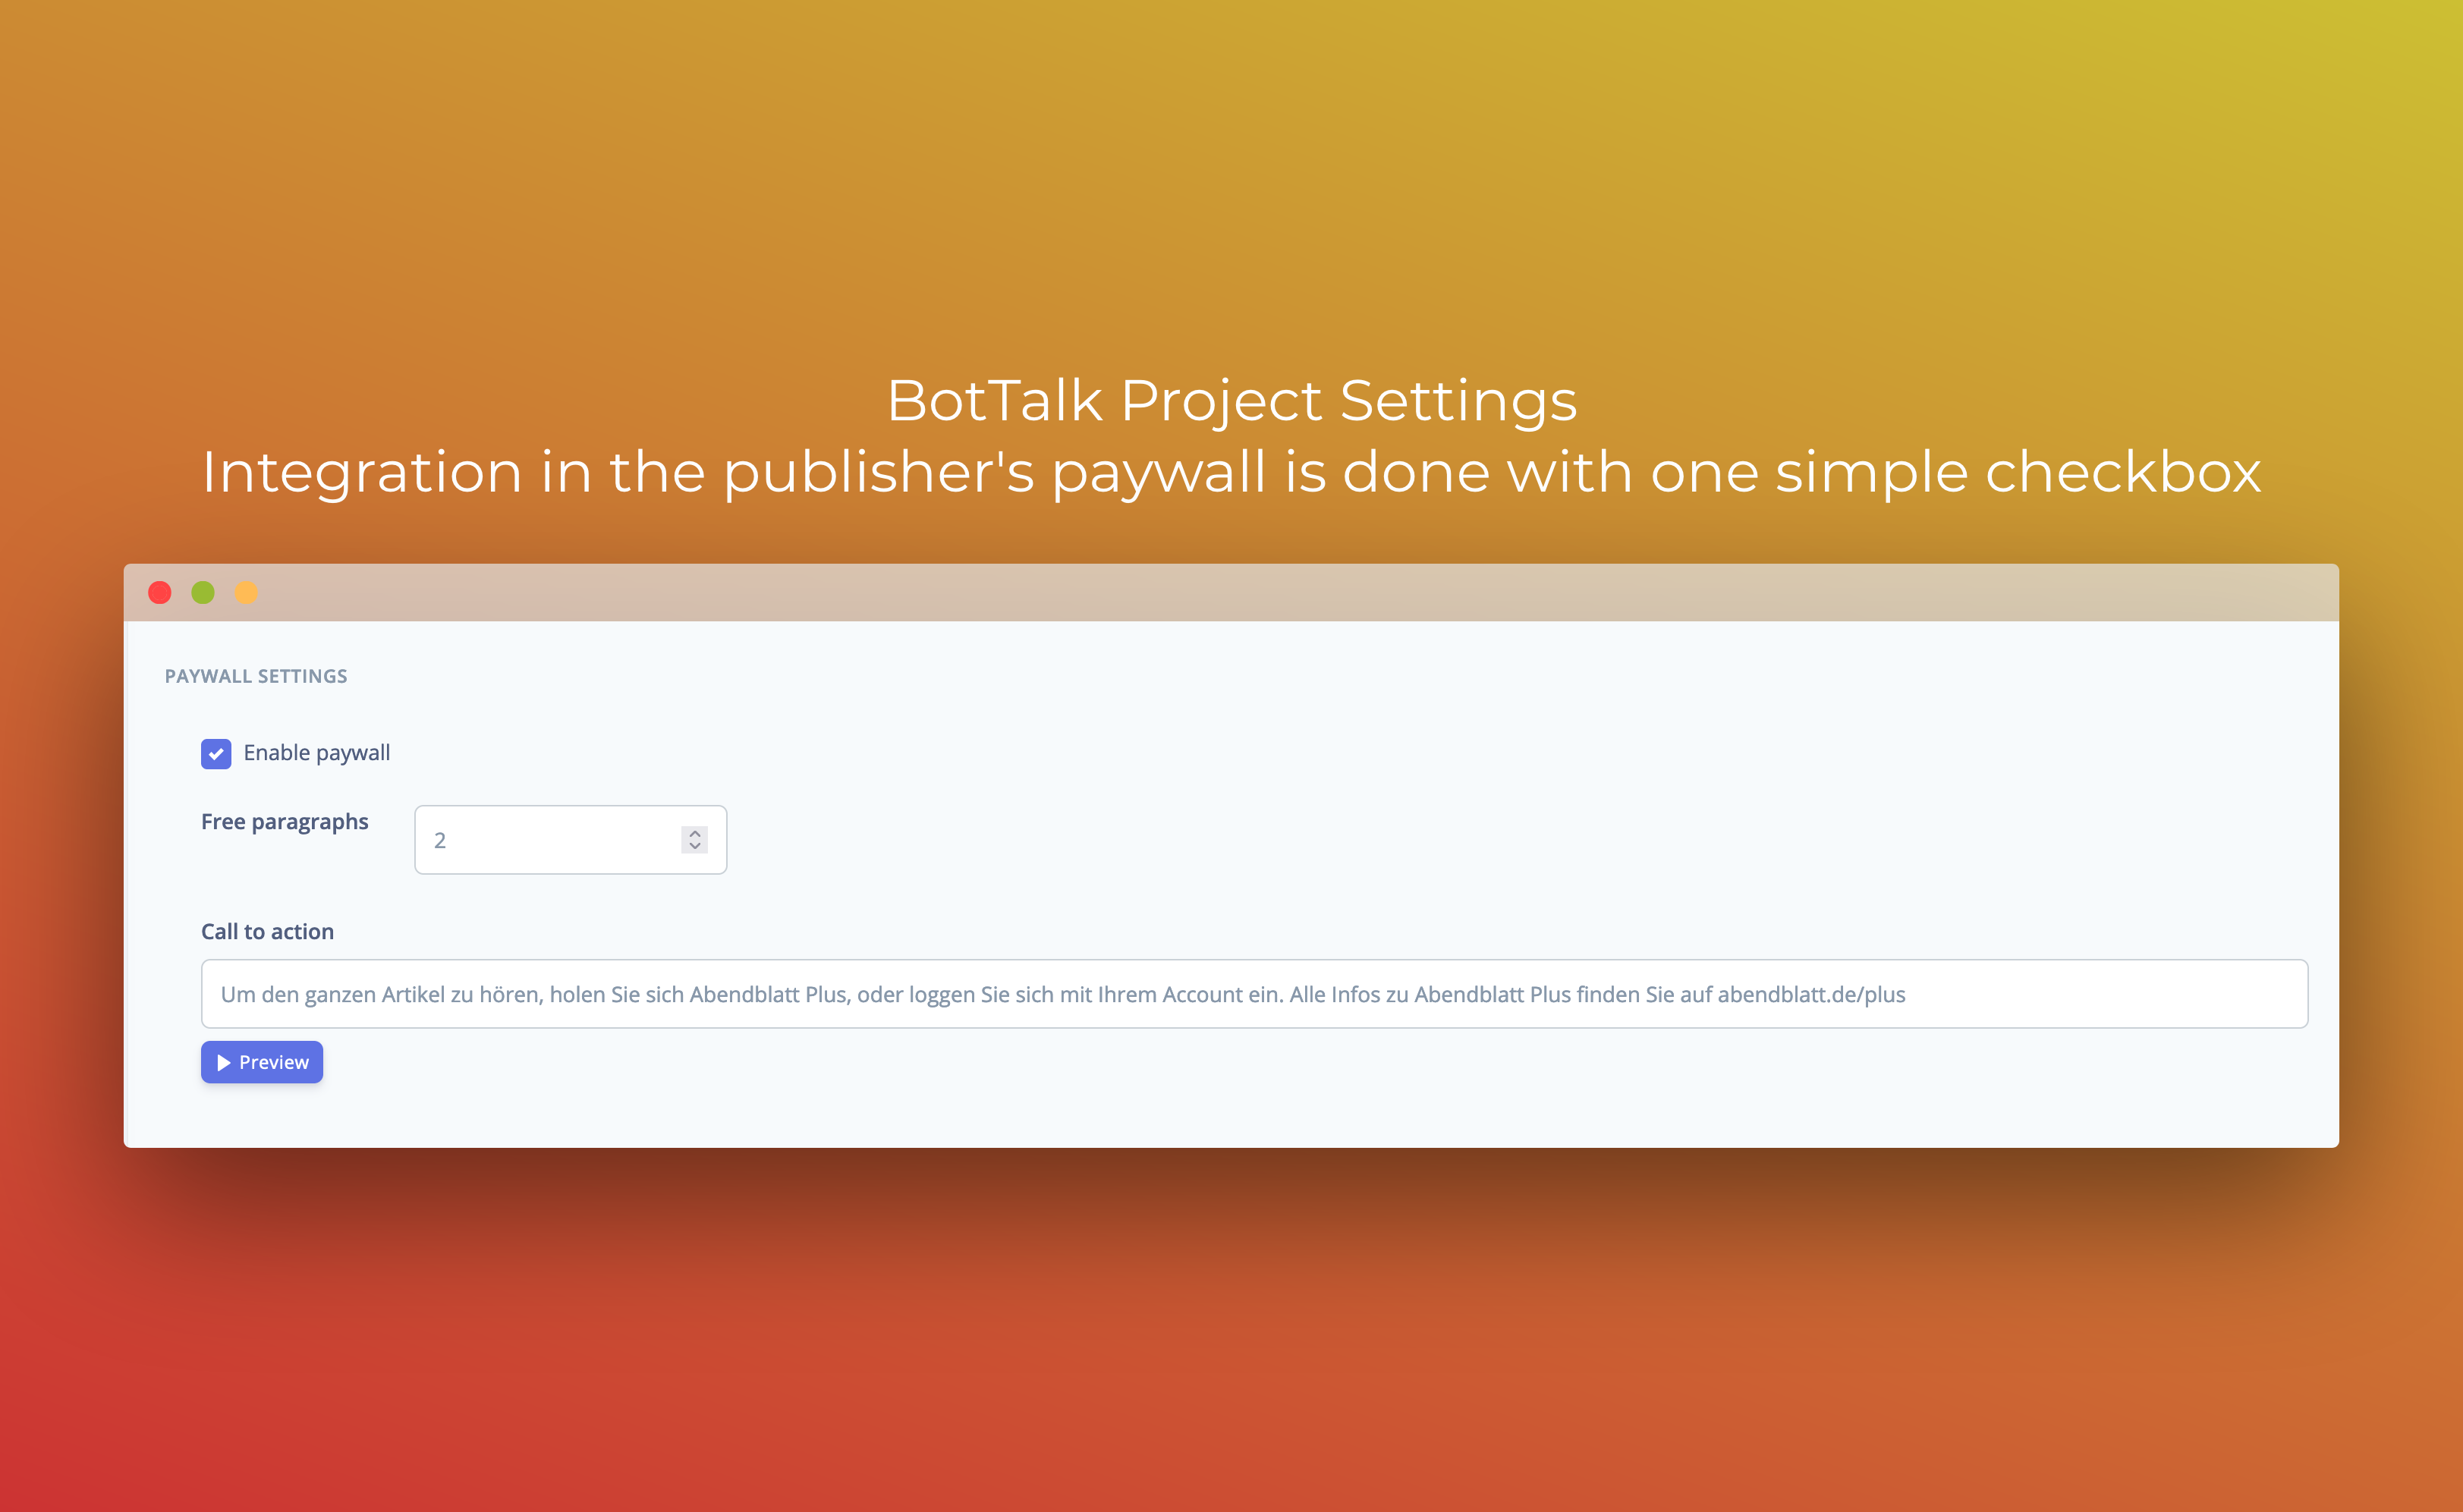 BotTalk Settings Paywall Checkbox